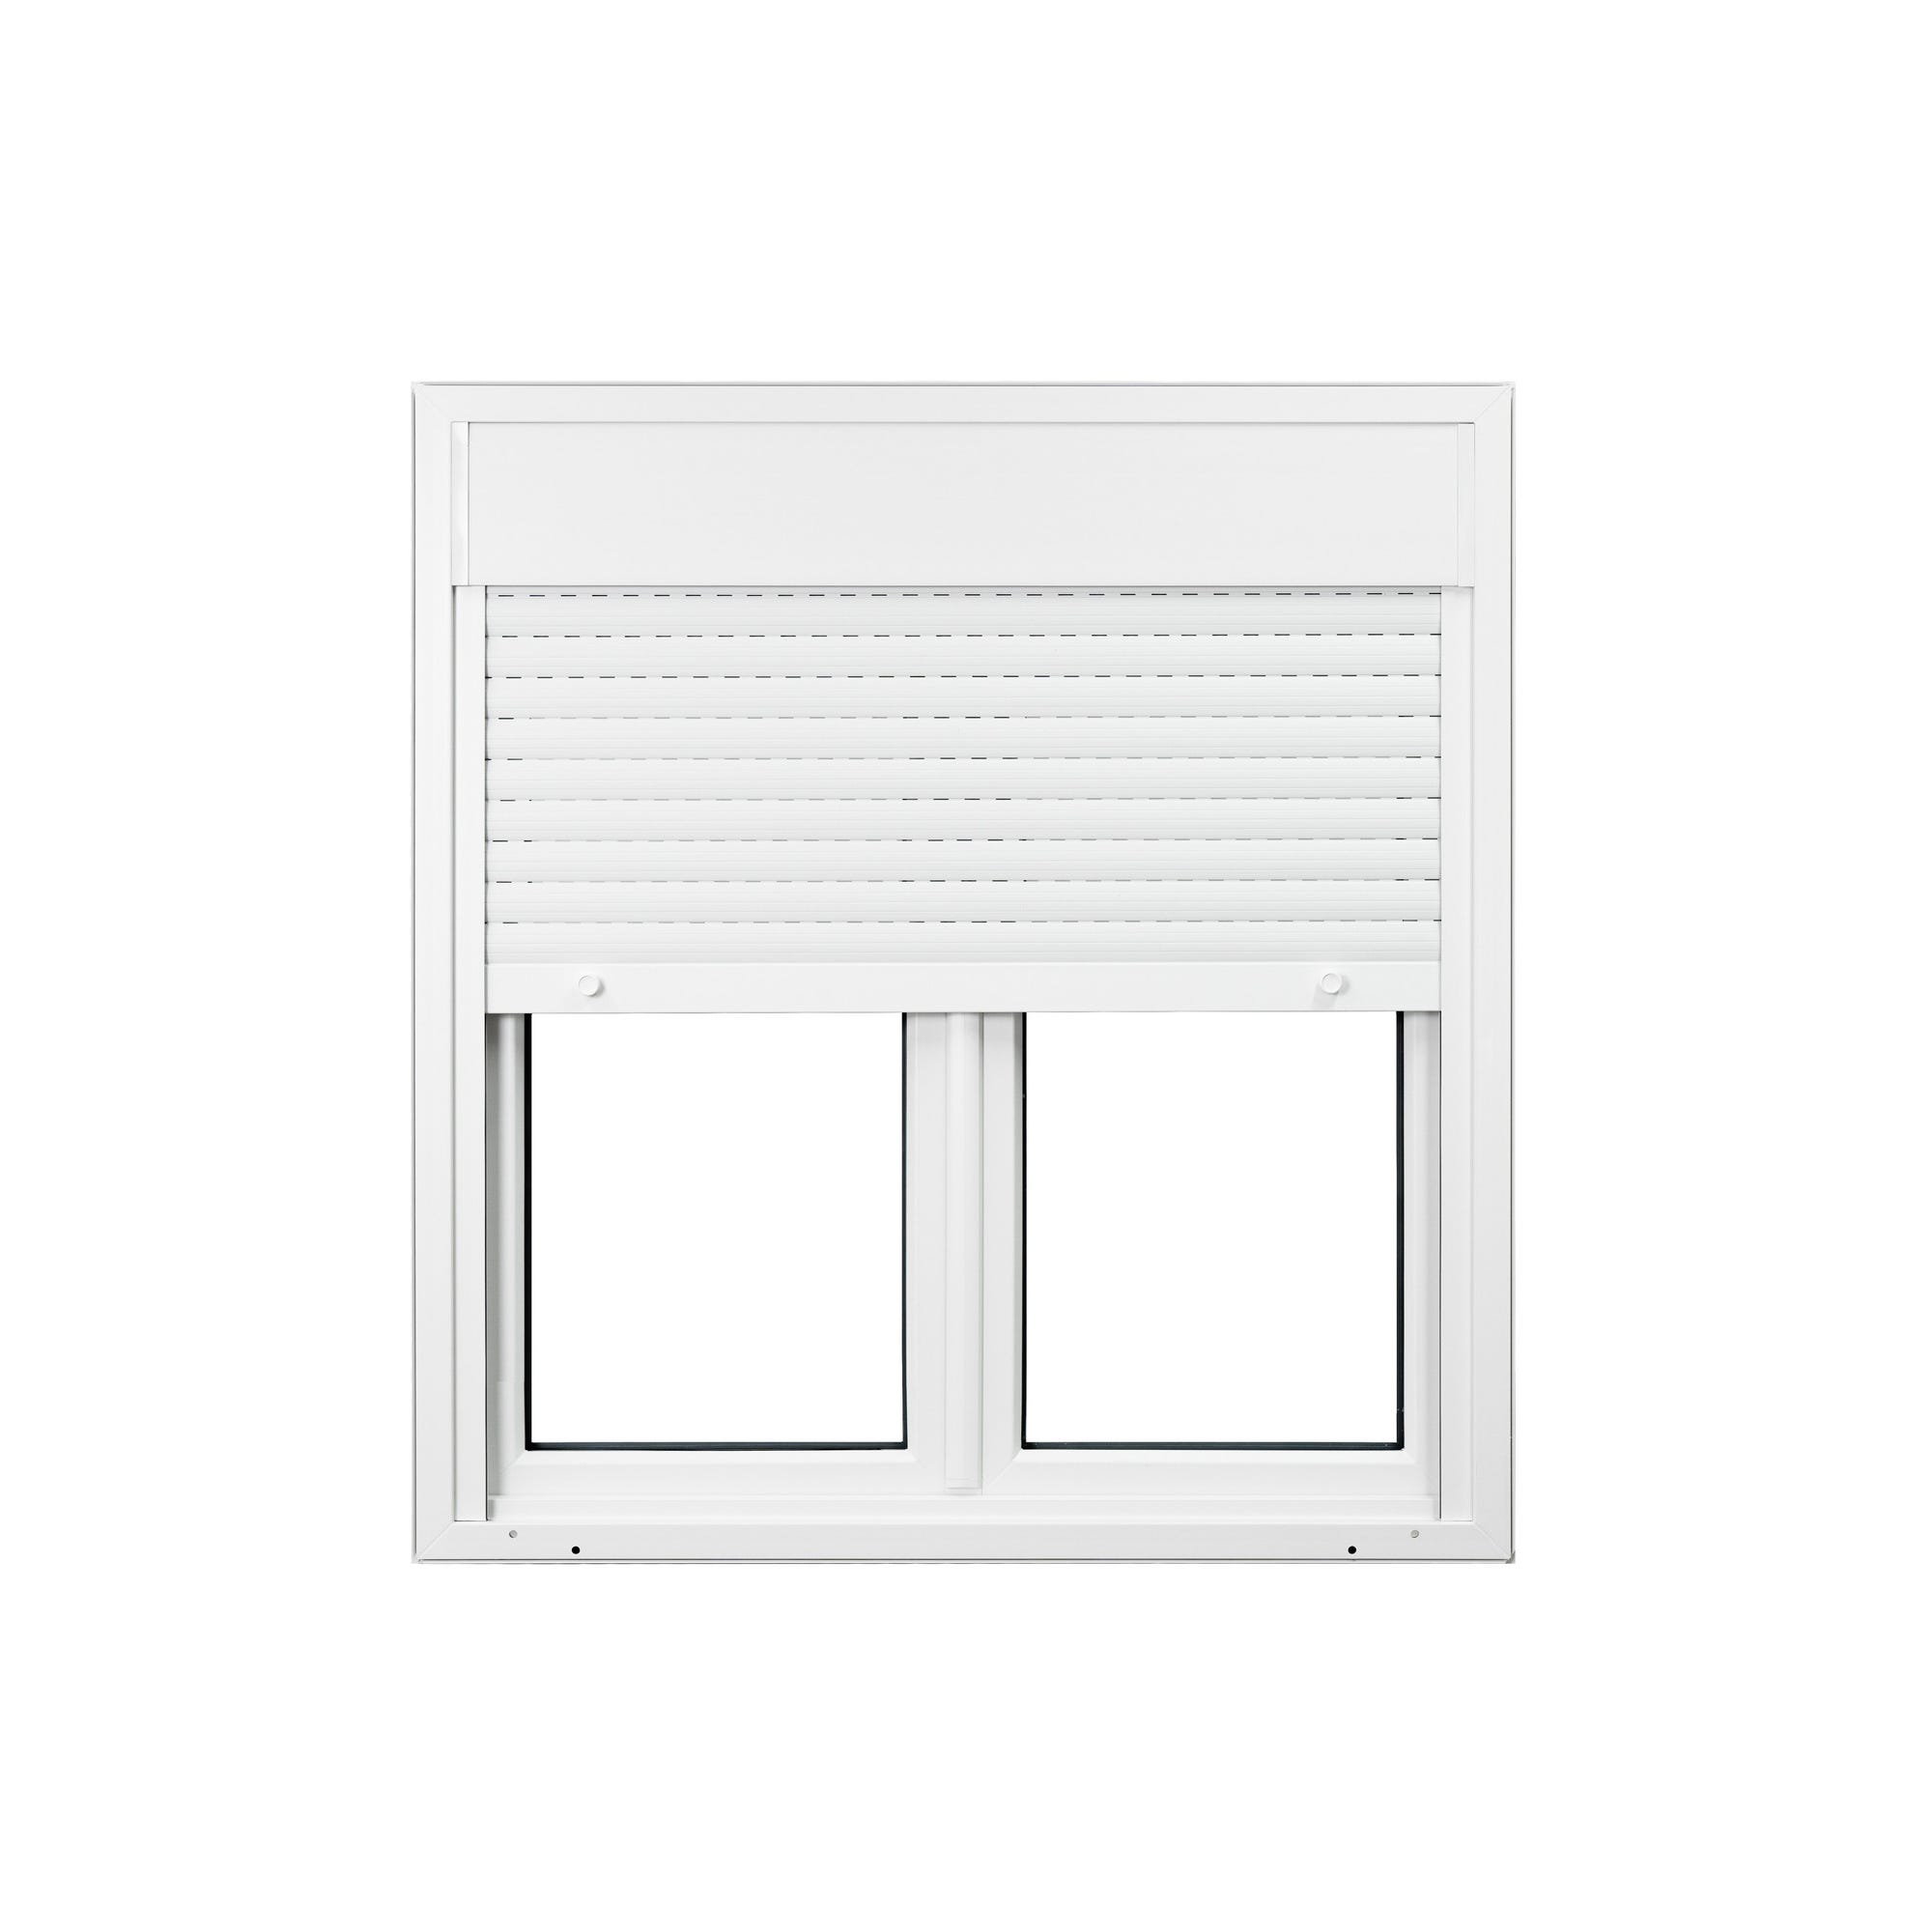 Fenêtre PVC avec volet roulant intégré monobloc Ob 2 vantaux H.135 x L.140 cm - GROSFILLEX 2